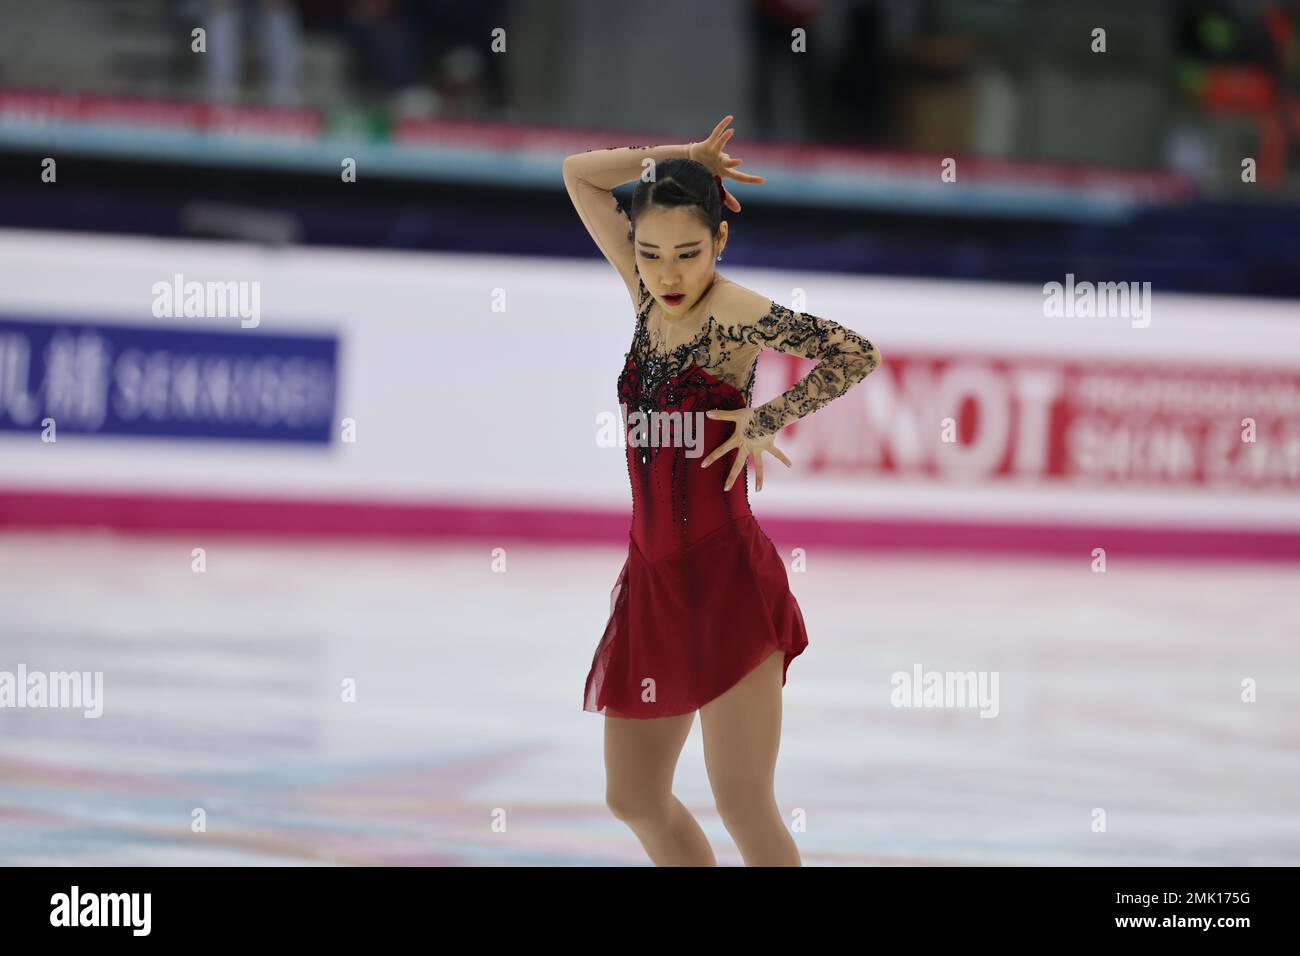 Mai Mihara du Japon participe à la finale du Grand Prix de patinage artistique de l'UIP à Turin 2022 à Palavela. Banque D'Images